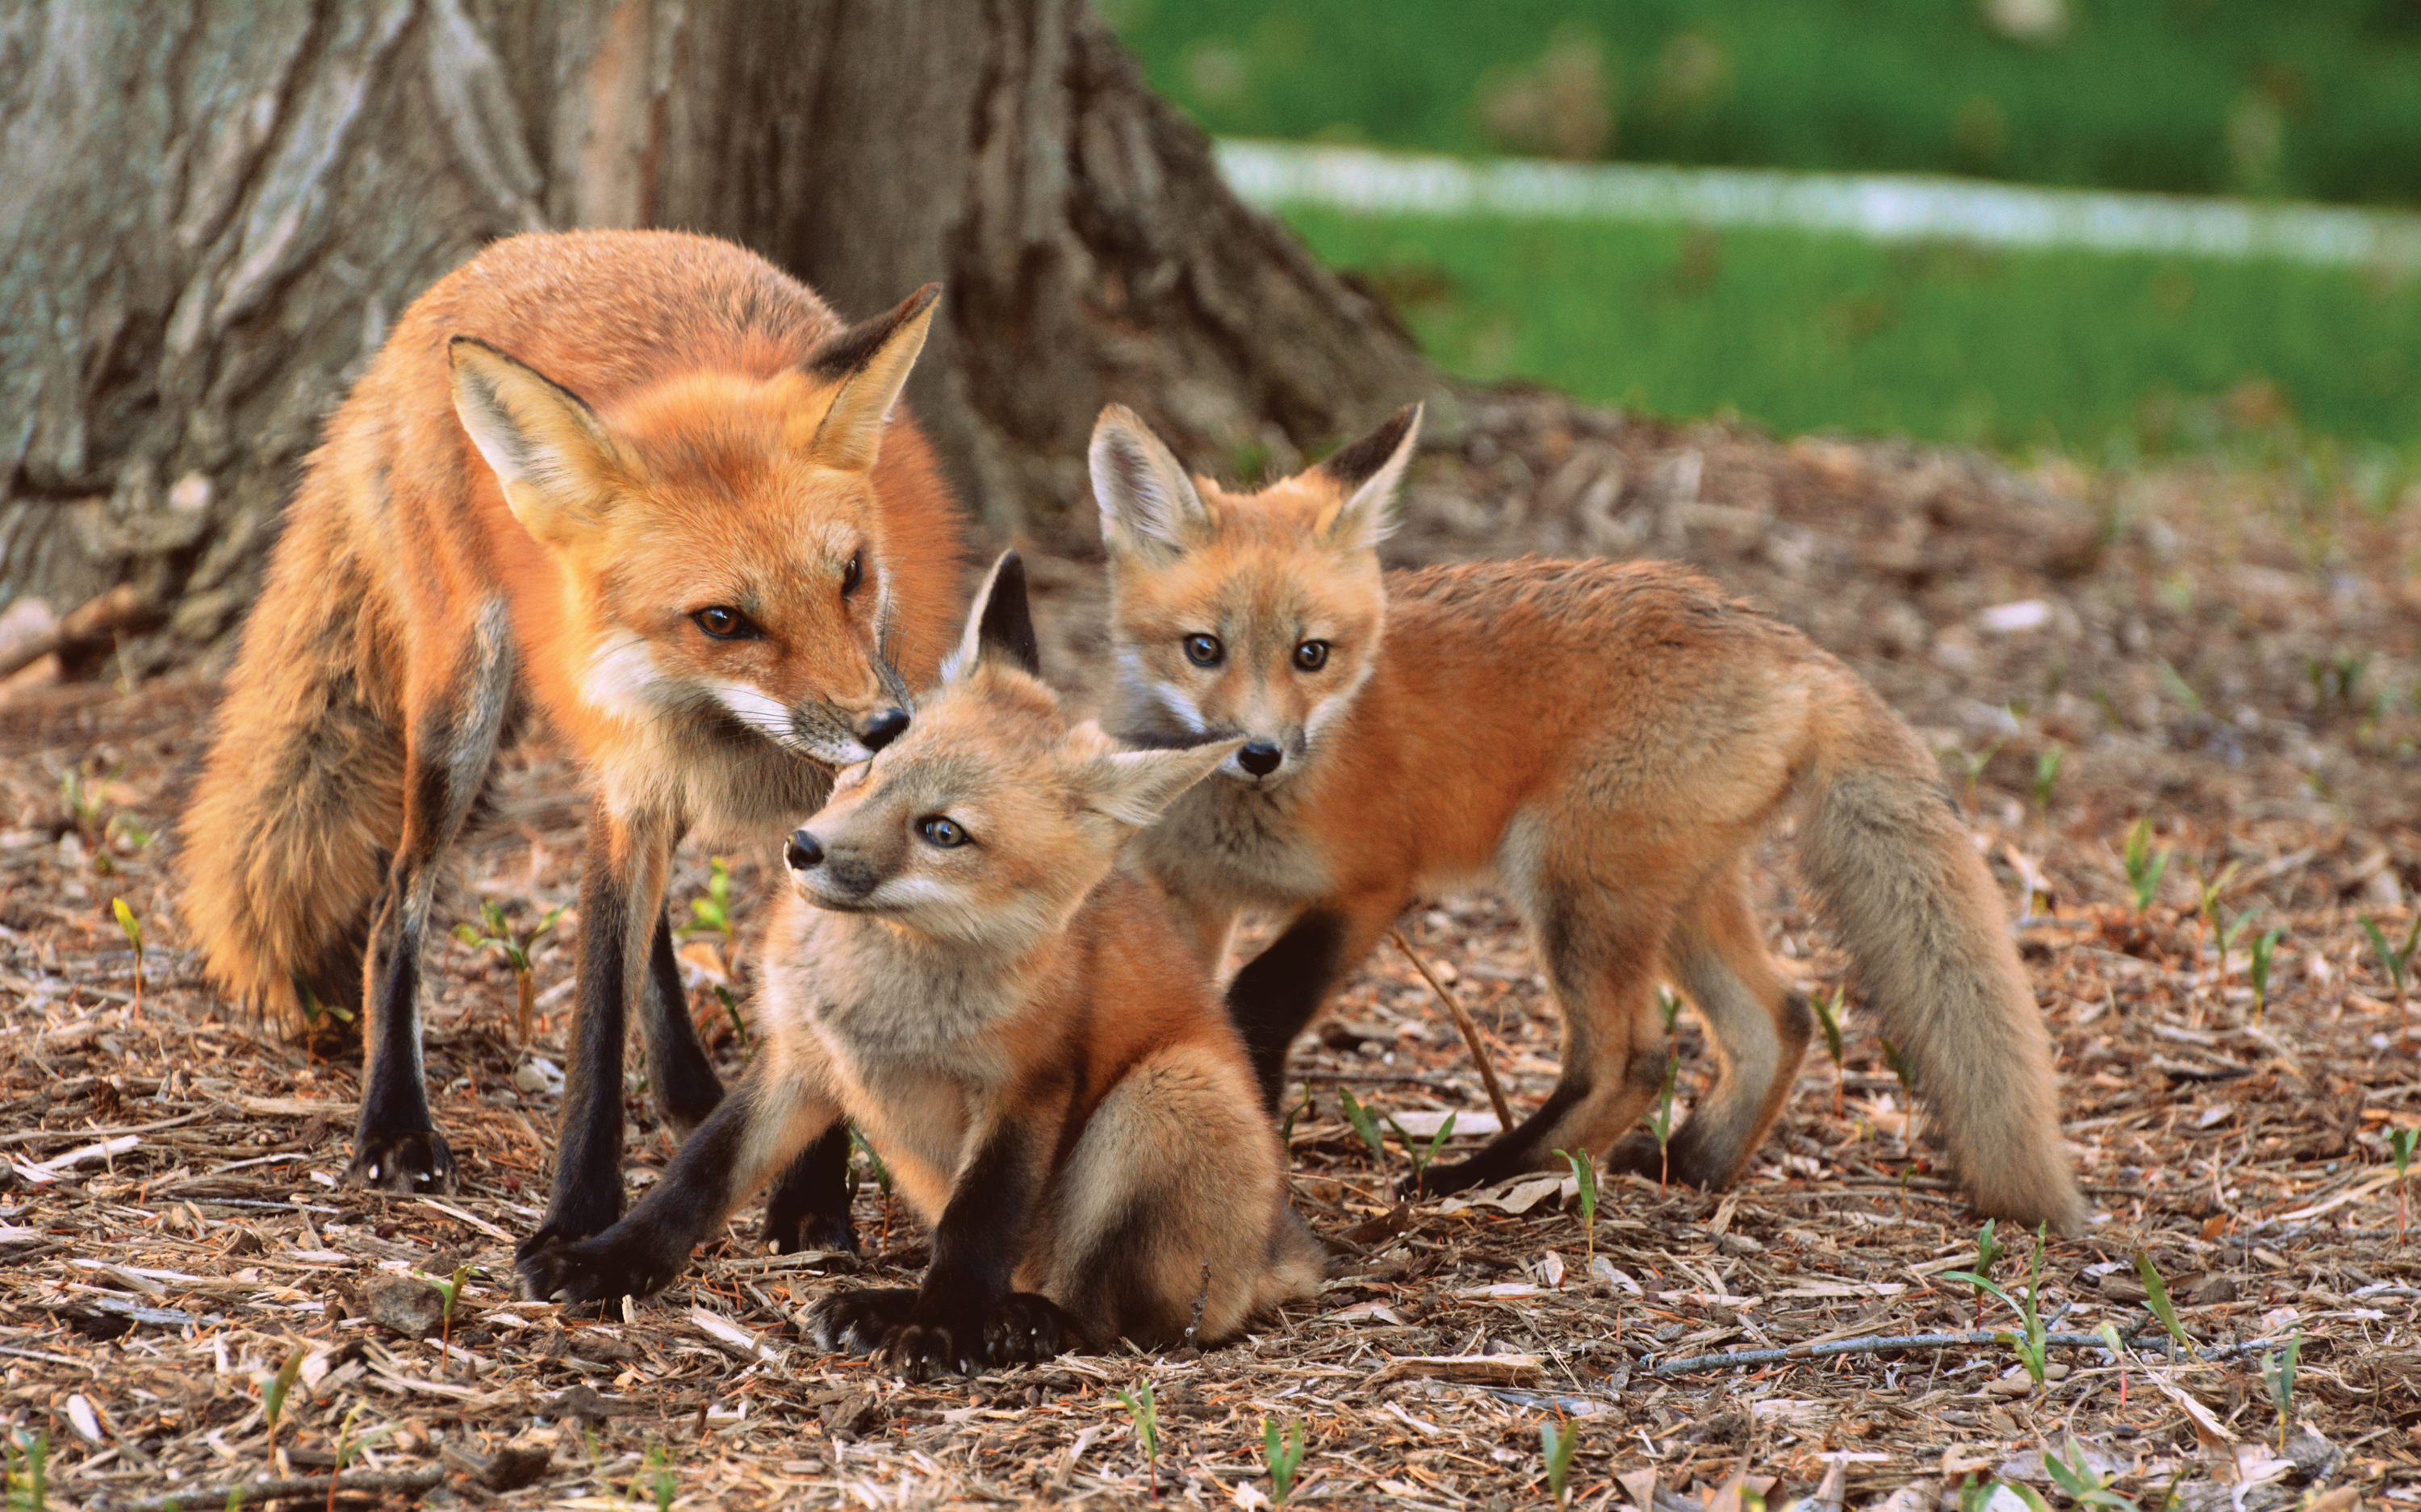 Those are foxes. Лиса. Лиса с лисятами. Картинка лиса с лисятами. Картина лиса с лисятами.